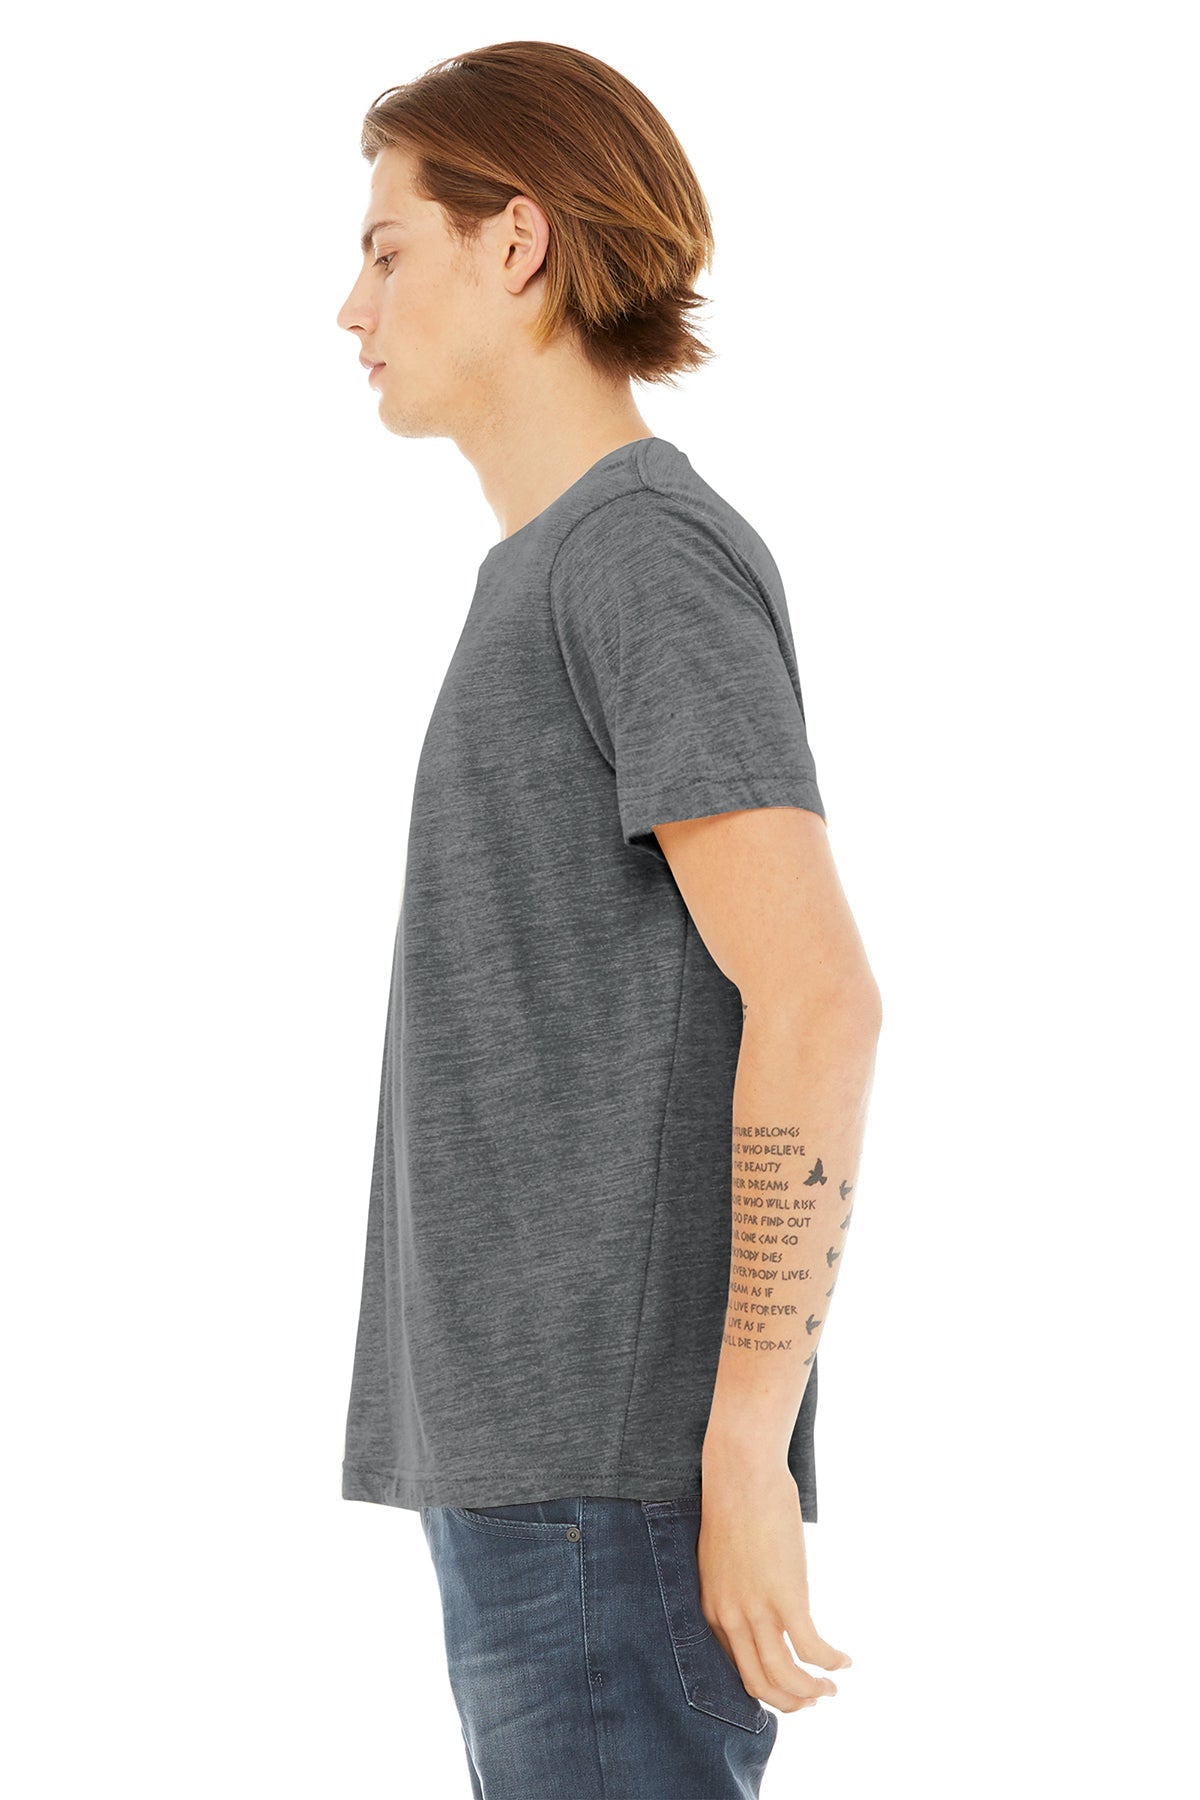 bella + canvas unisex poly-cotton short sleeve t-shirt 3650 asphalt slub